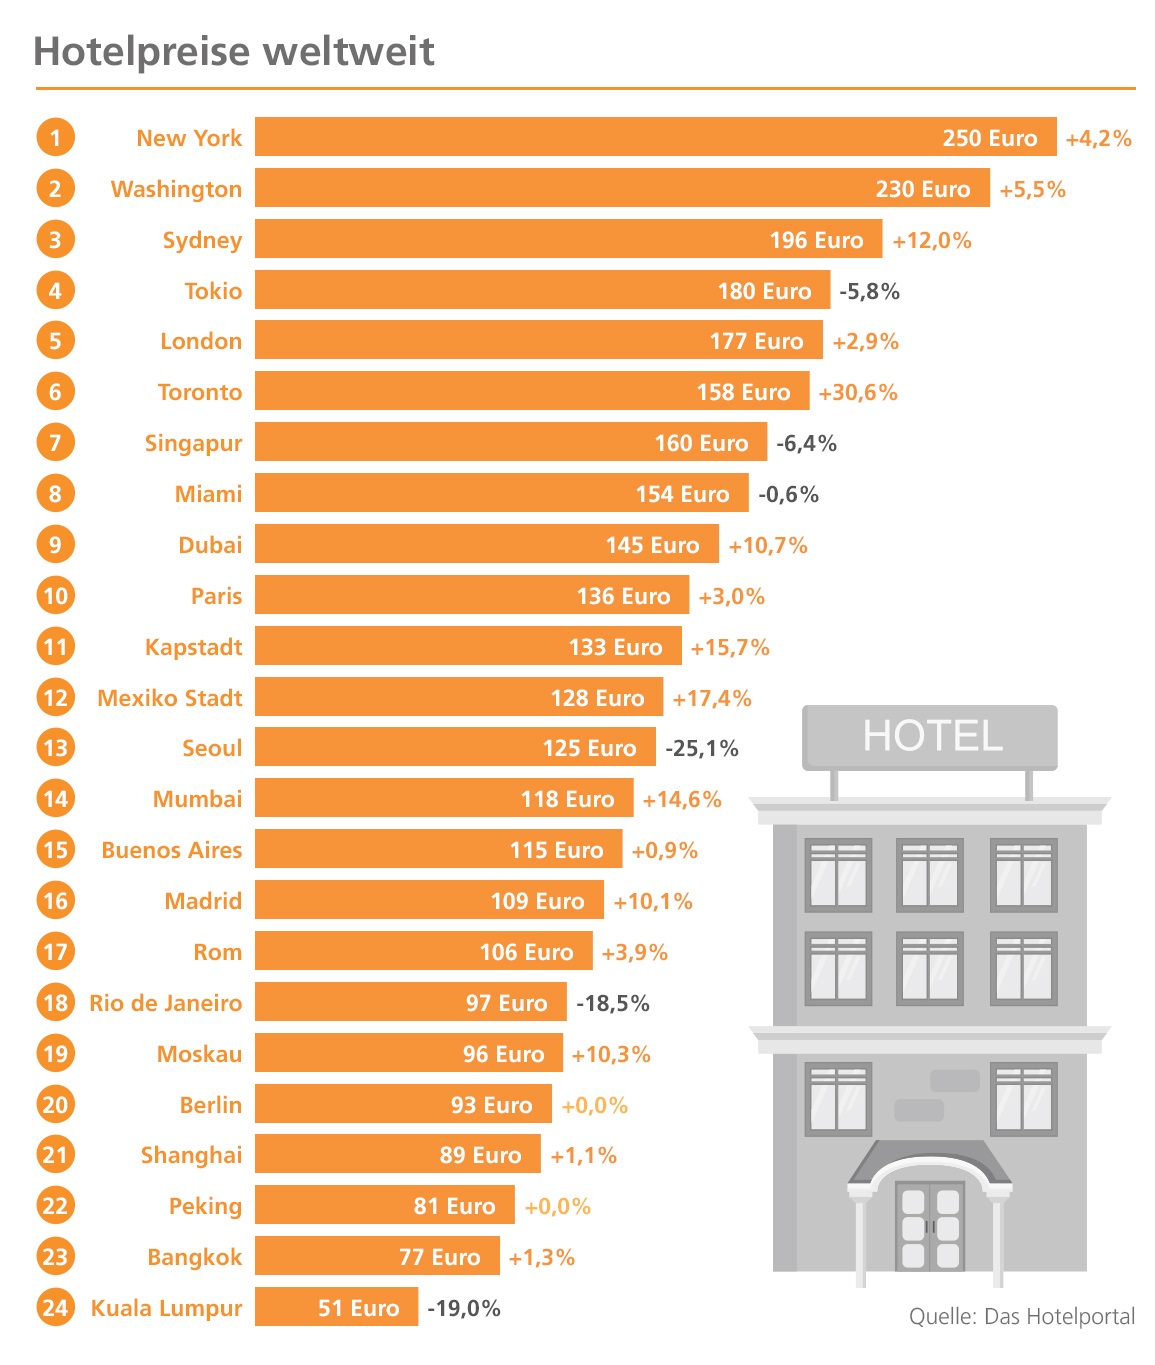 Hotelpreise weltweit